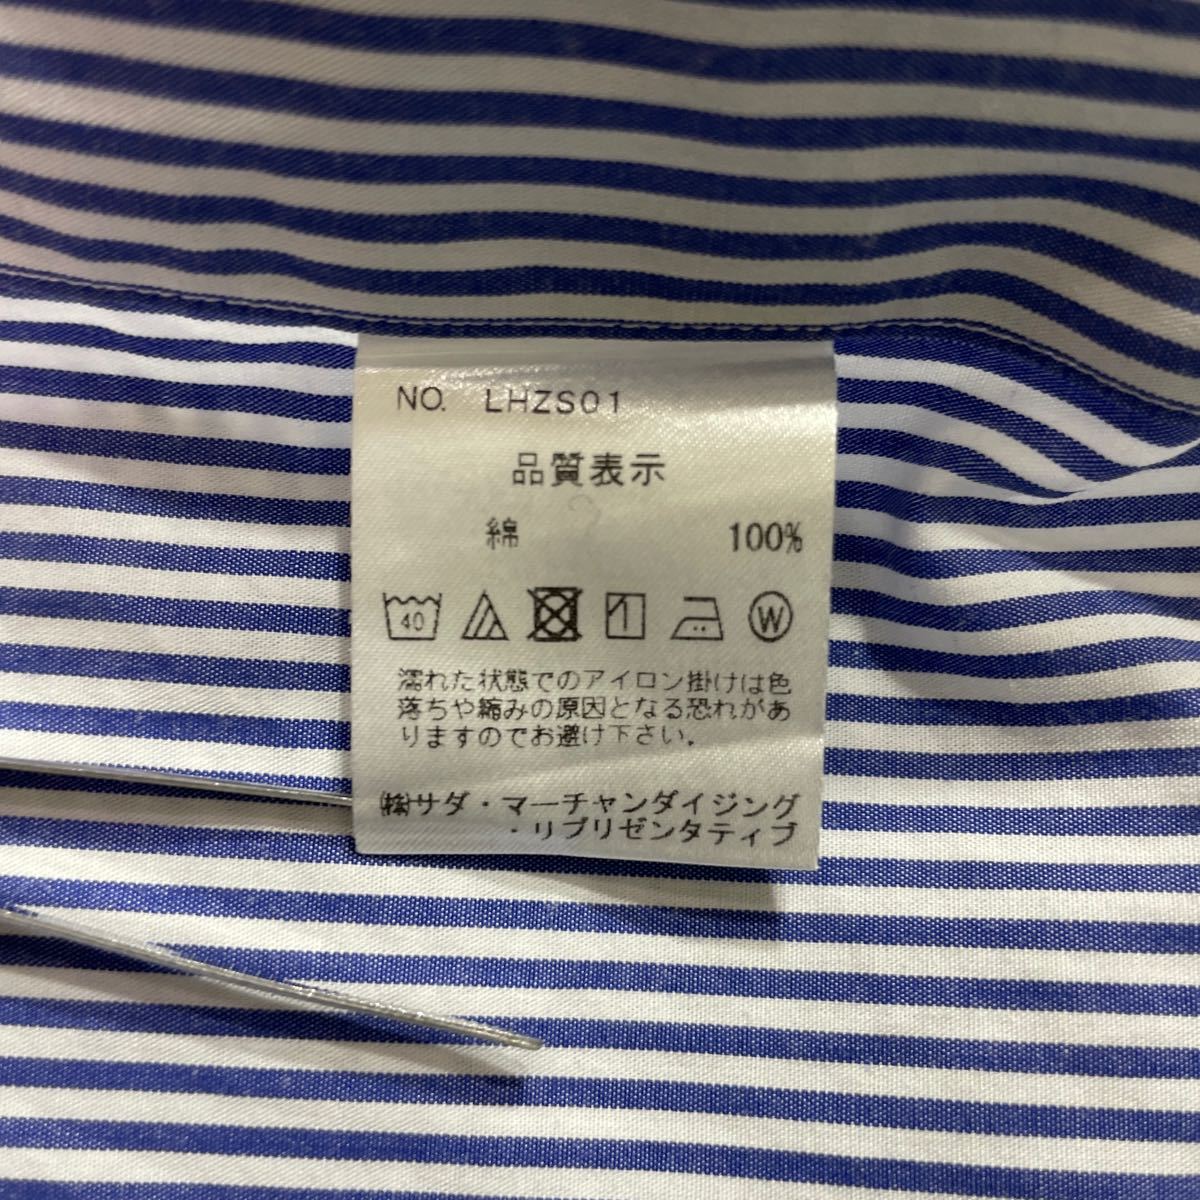 267 Maker's Shirt 鎌倉 メーカーズシャツ カマクラ ストライプ 長袖 ワイシャツ 225 Liberty CONTEMPORARY SLIM FIT 日本製 メンズ 40116M_画像6